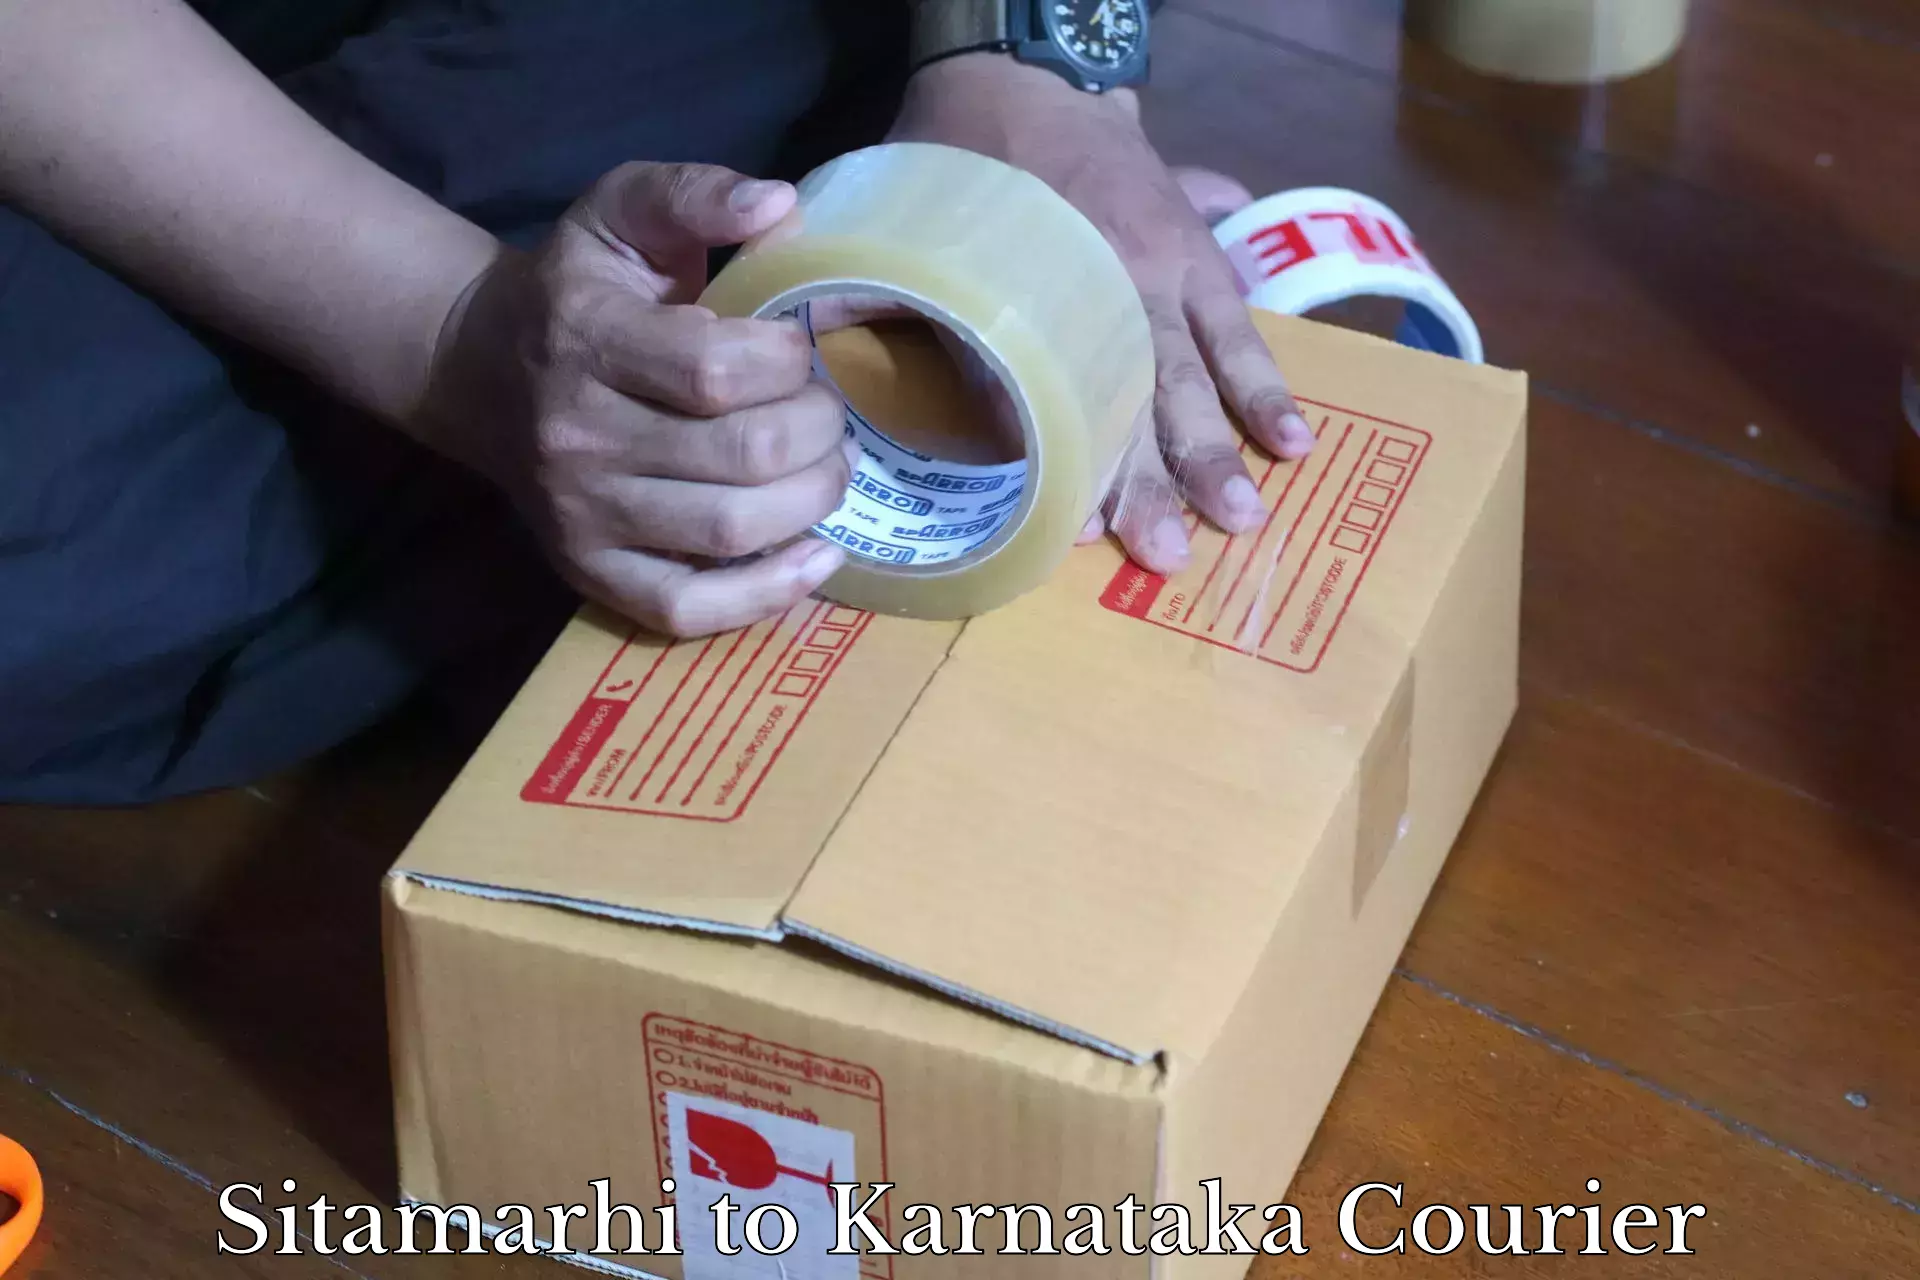 Lightweight courier Sitamarhi to Bidar